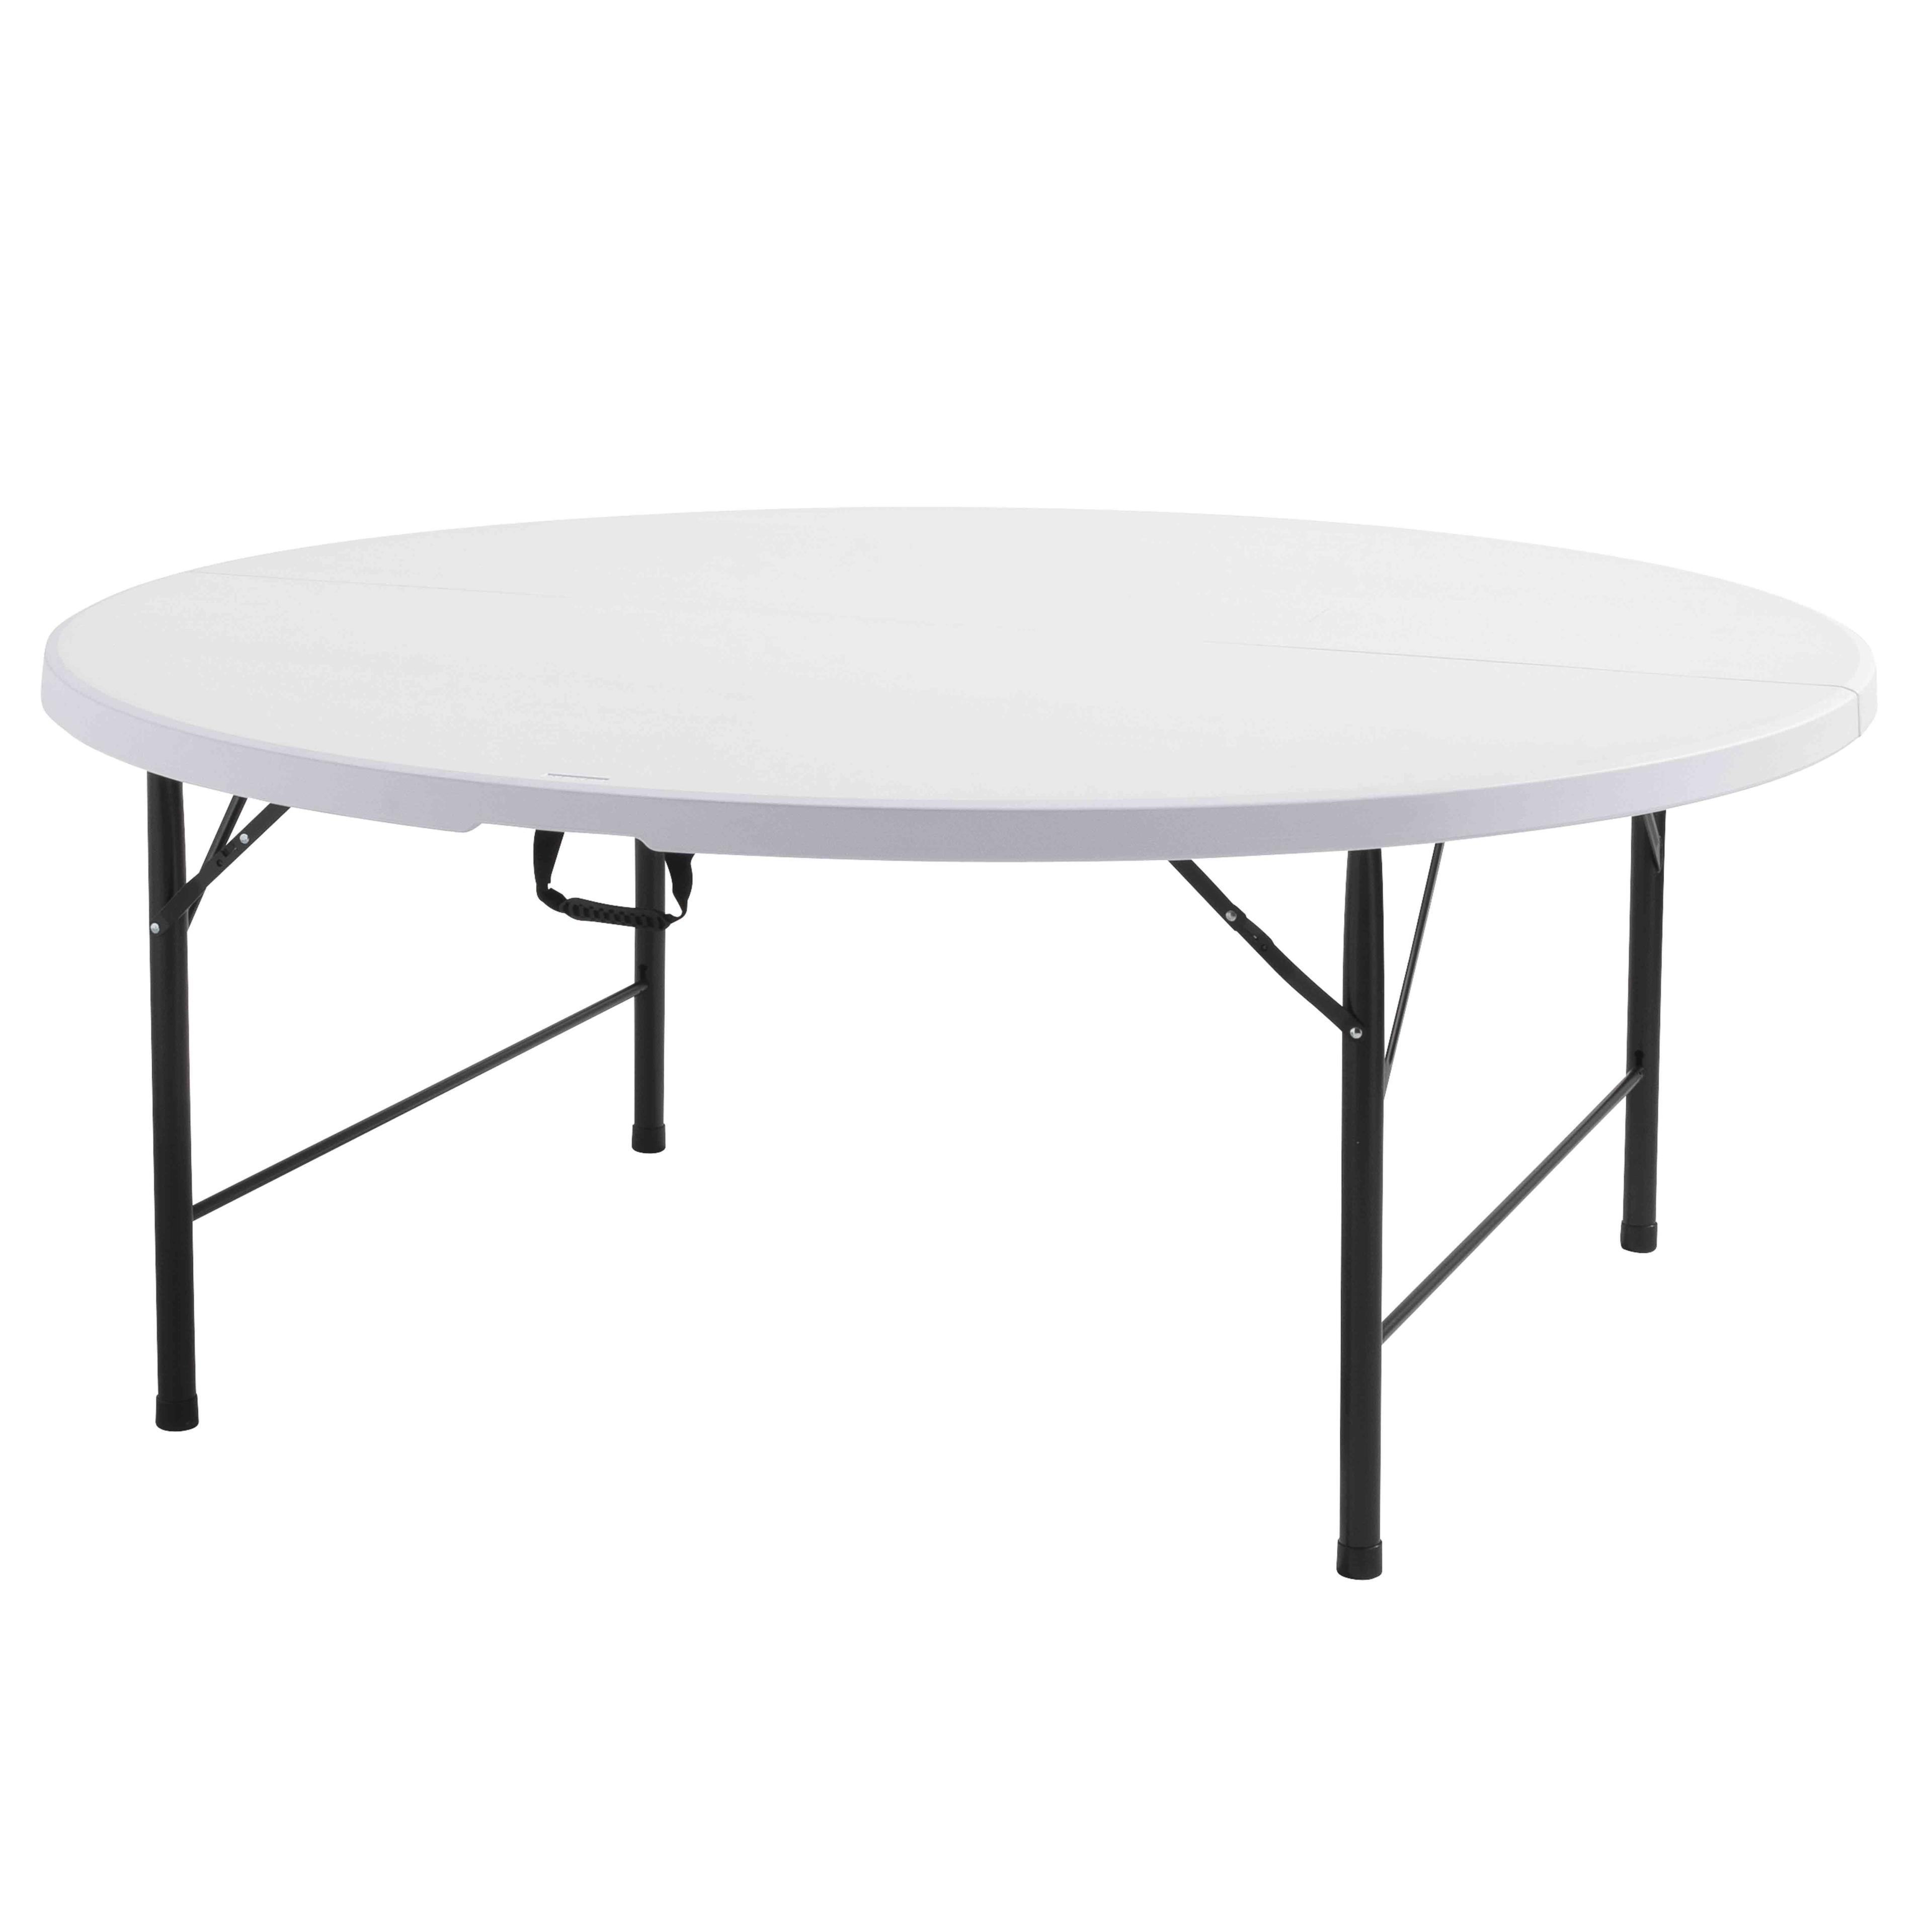 Petite table ronde blanche pour 4 personnes, petite table ronde pliante 